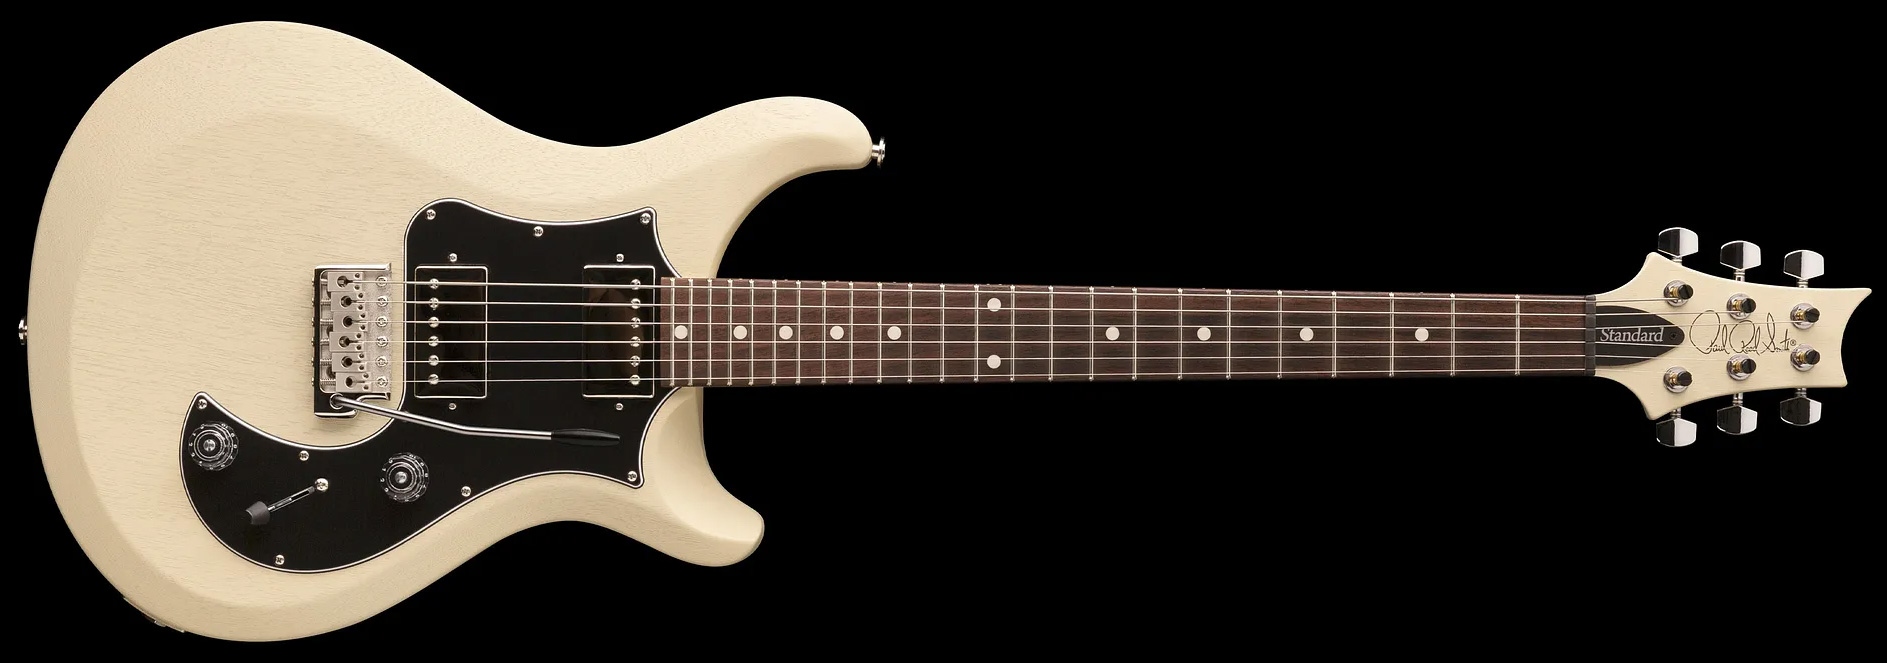 Prs S2 Standard 24 Satin Usa 2h Trem Rw - Antique White - Guitarra eléctrica de doble corte. - Variation 1